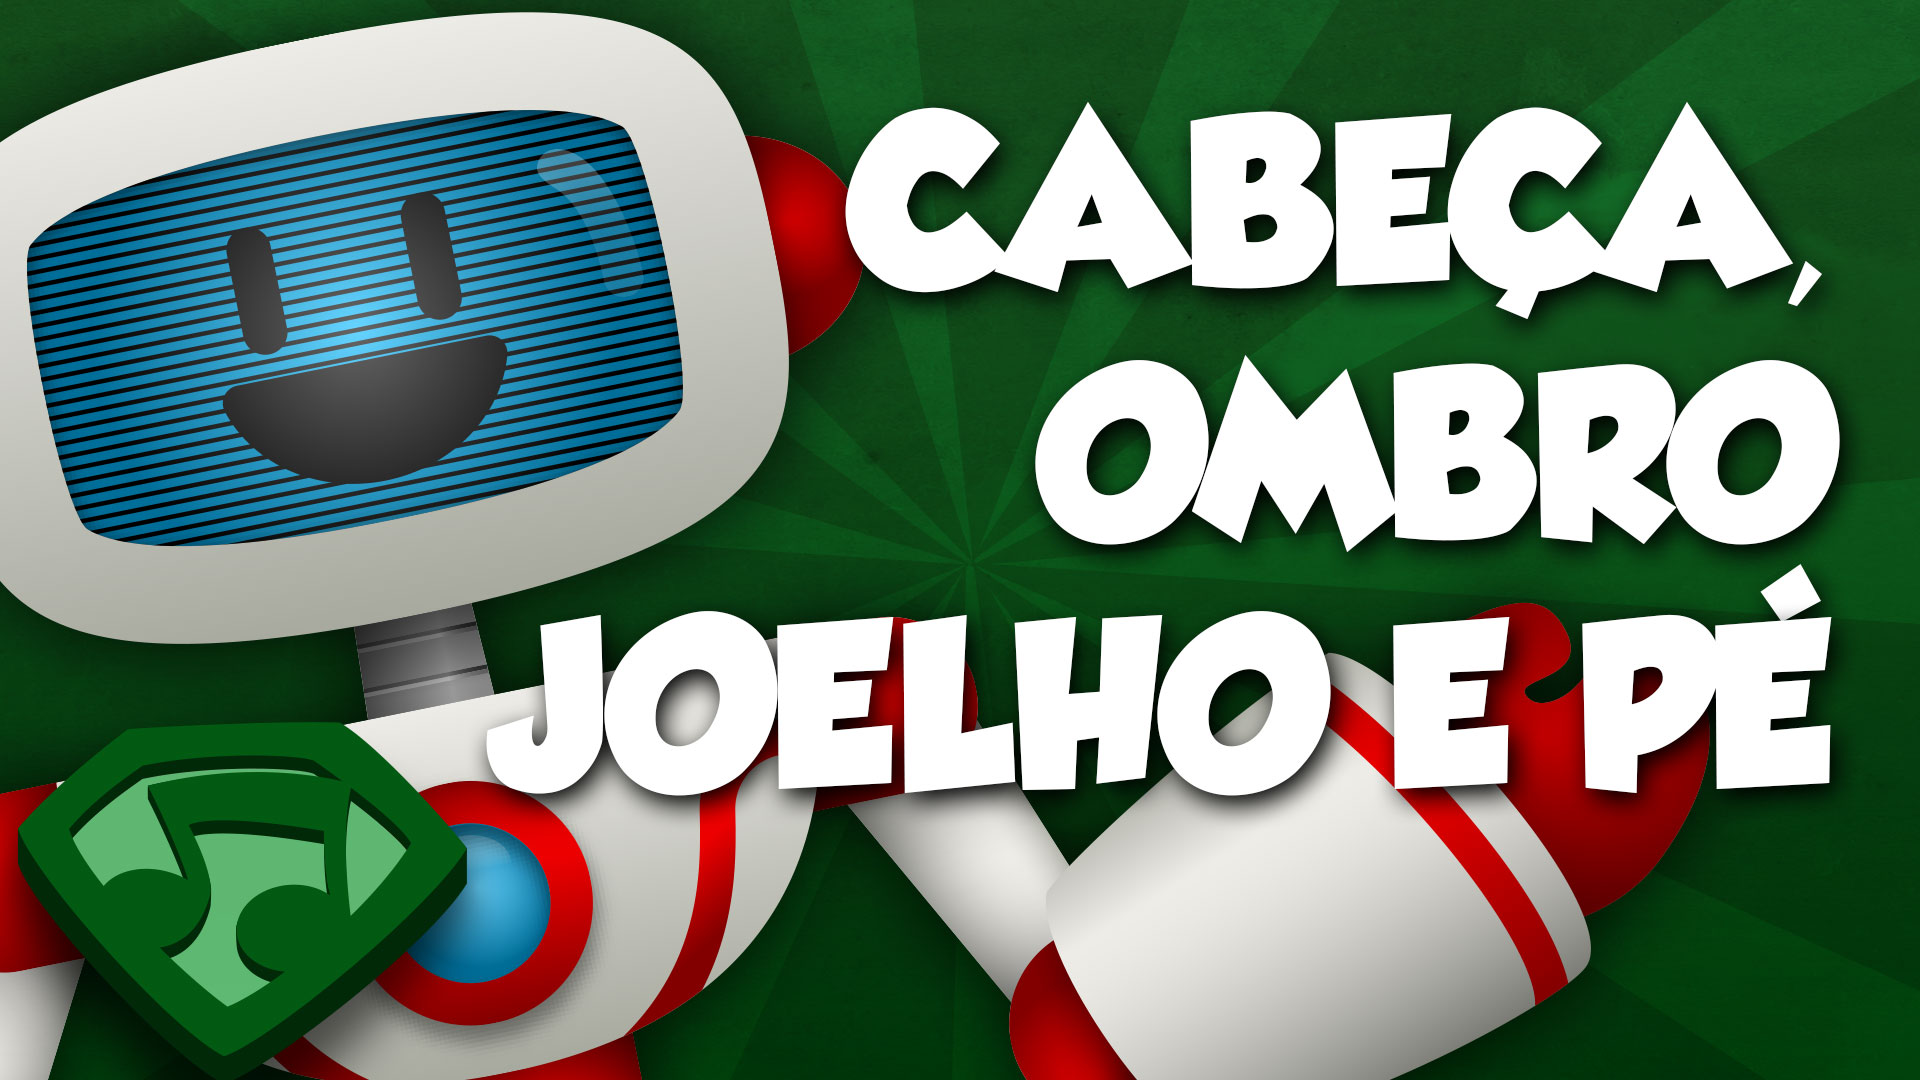 Miniatura do vídeo Cabeça, Ombro, Joelho e Pé (Versão com Letras). Clique para assistir o vídeo.